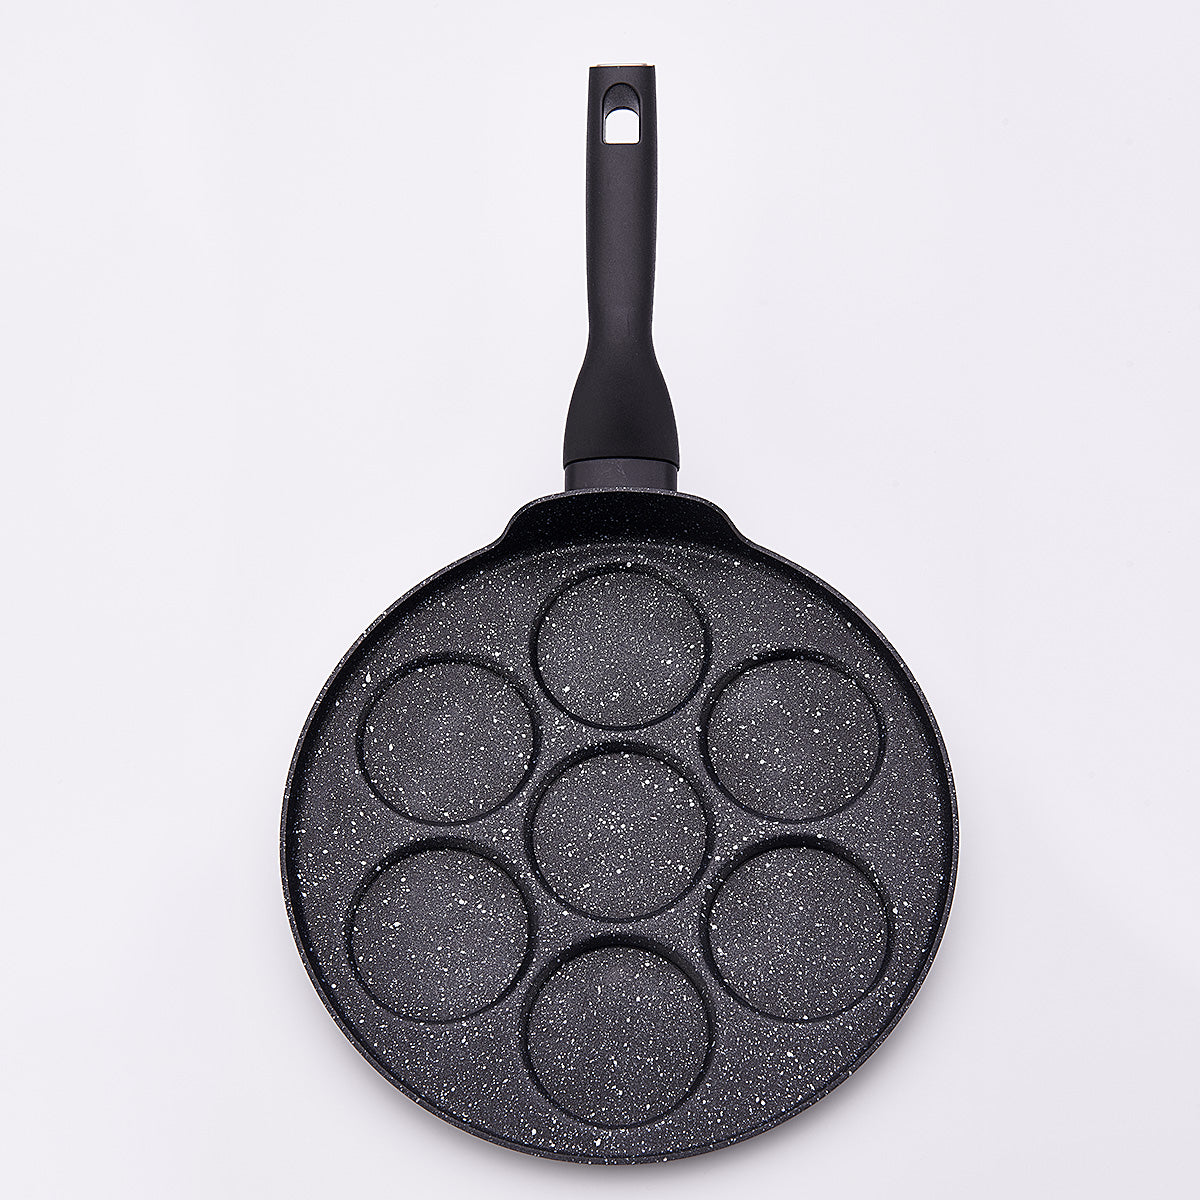 Korkmaz Nora Pancake Frying Pan 26cm - A2906